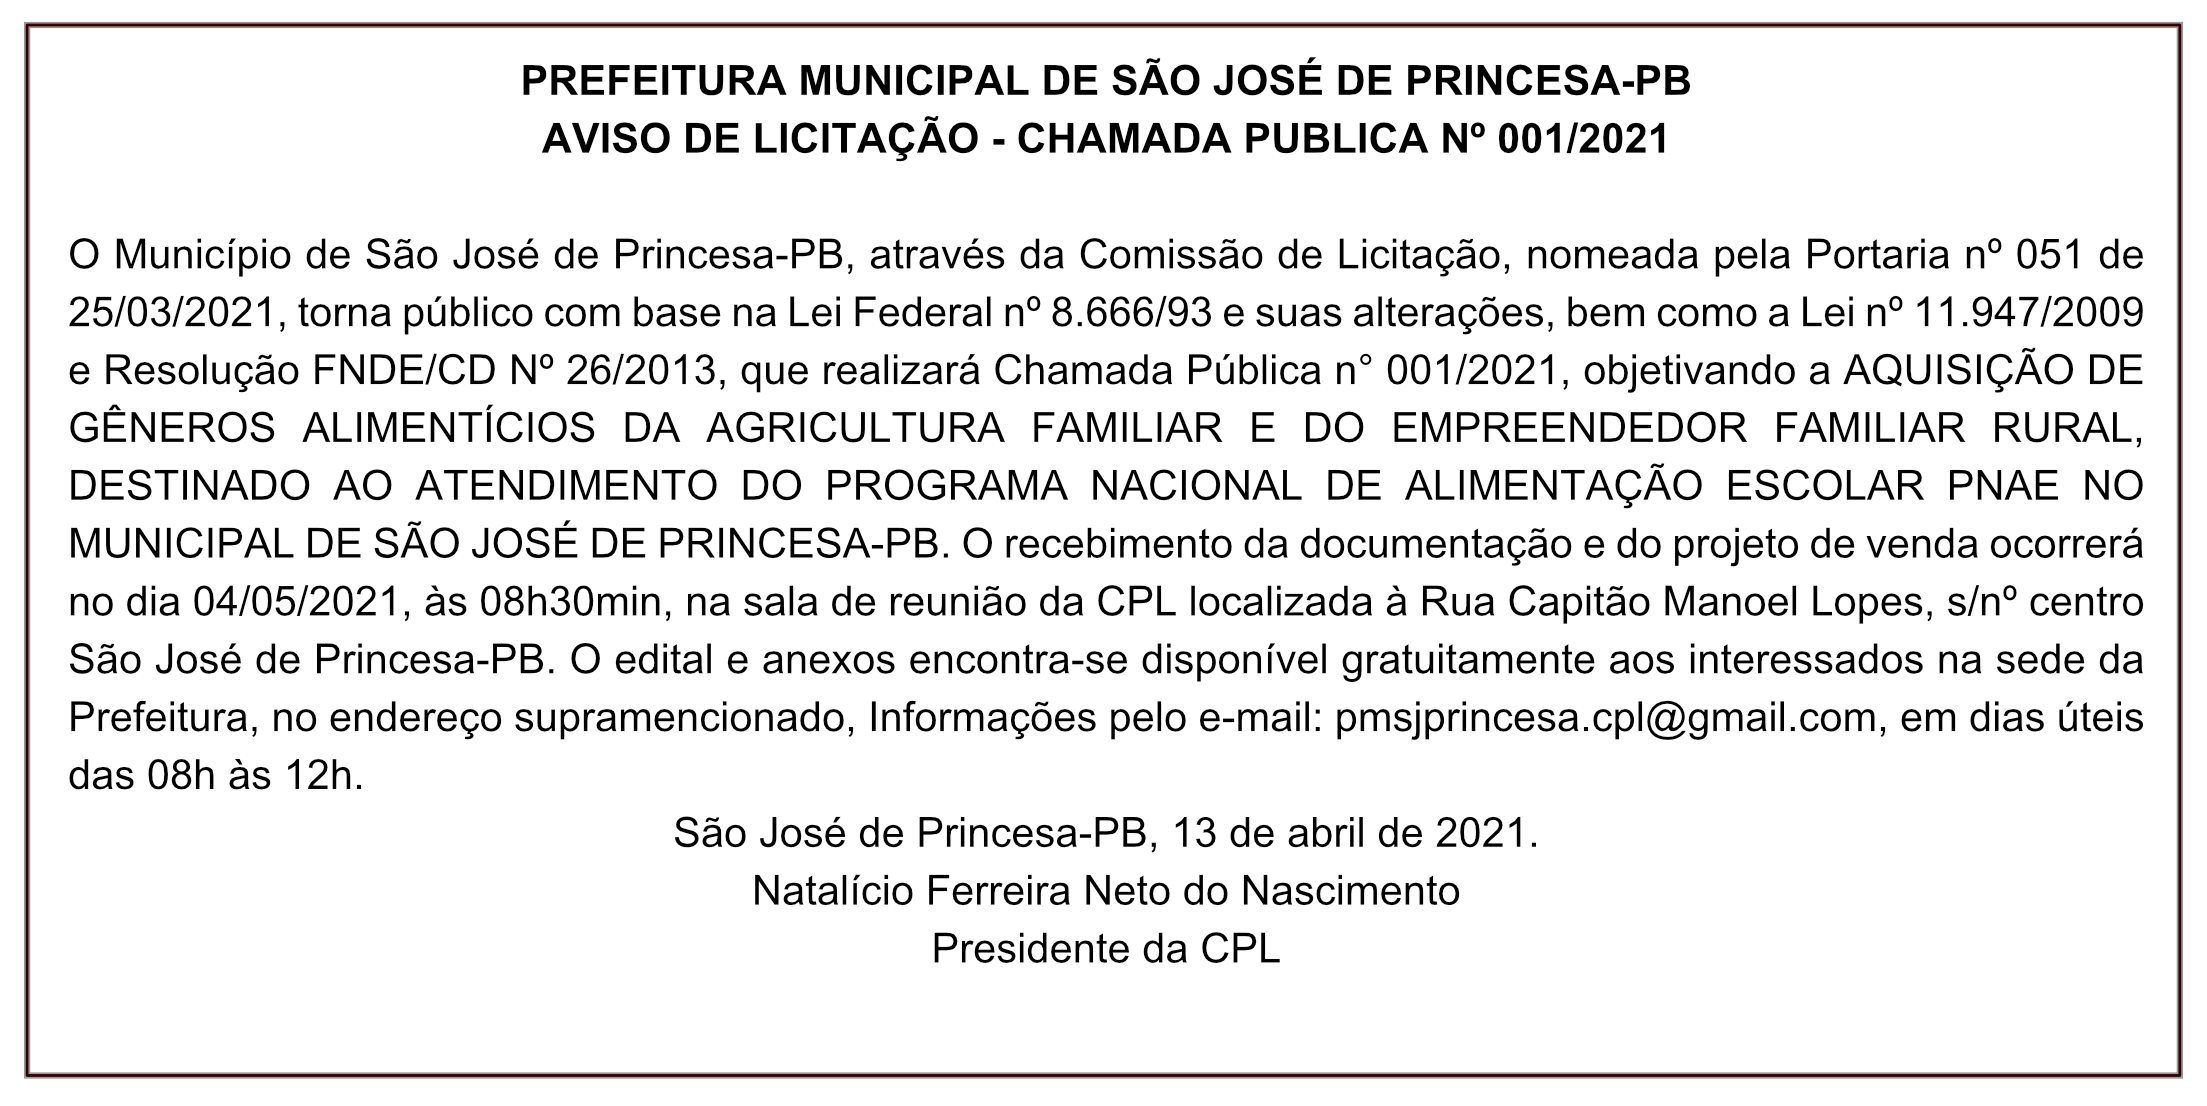 PREFEITURA MUNICIPAL DE SÃO JOSÉ DE PRINCESA – AVISO DE LICITAÇÃO – CHAMADA PUBLICA Nº 001/2021